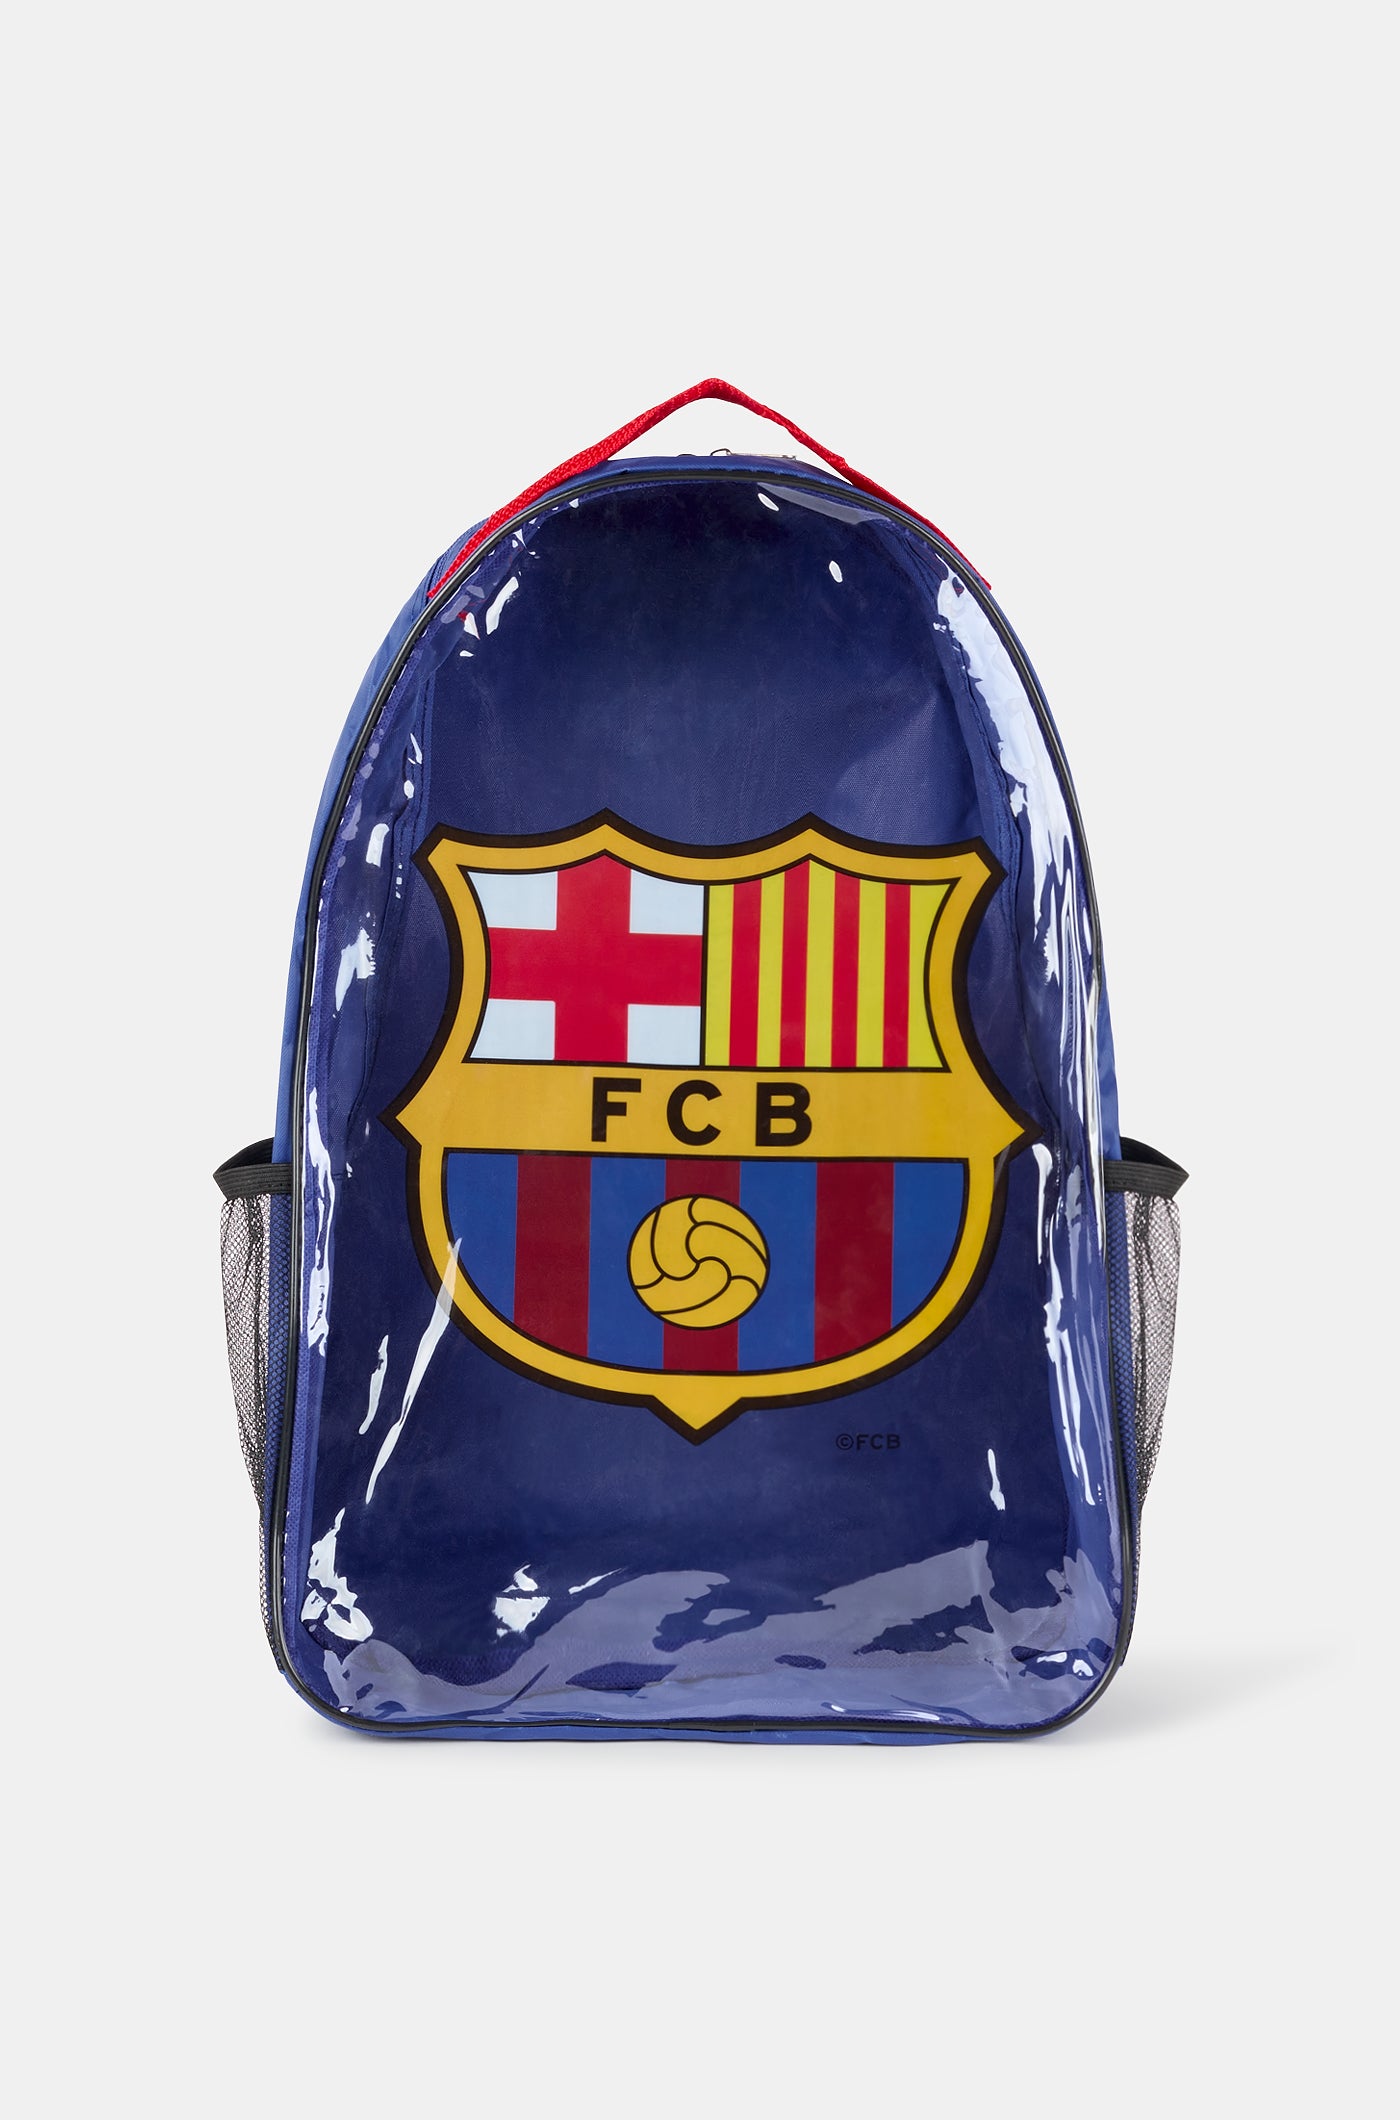 Conjunt d’entrenament FC Barcelona